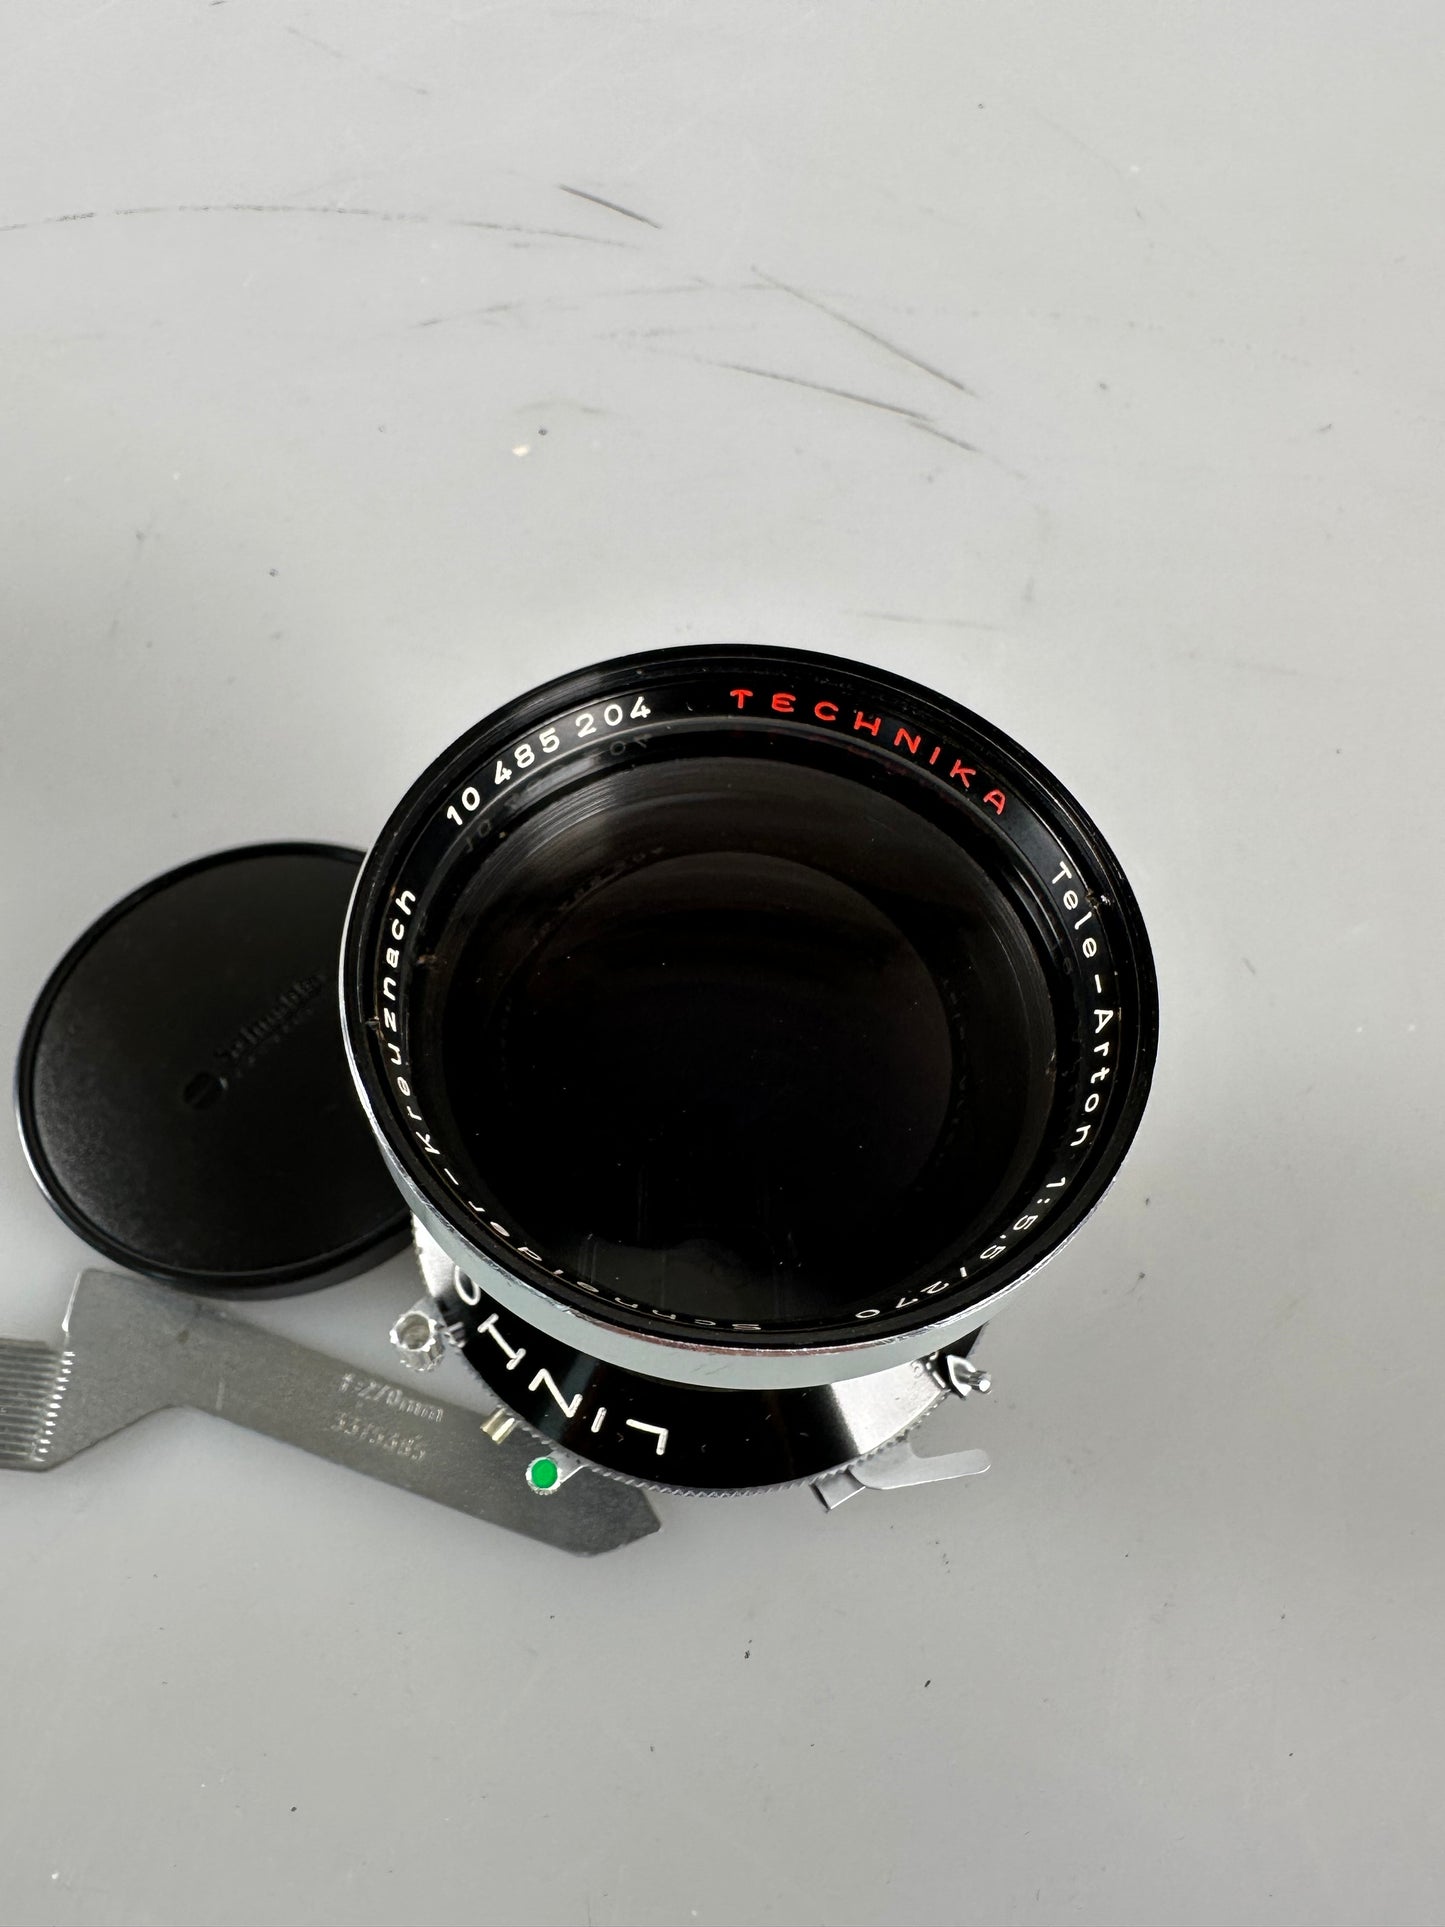 Linhof Schneider Kreuznach 270mm f5.5 lens (Linhof Technika Select) with cam